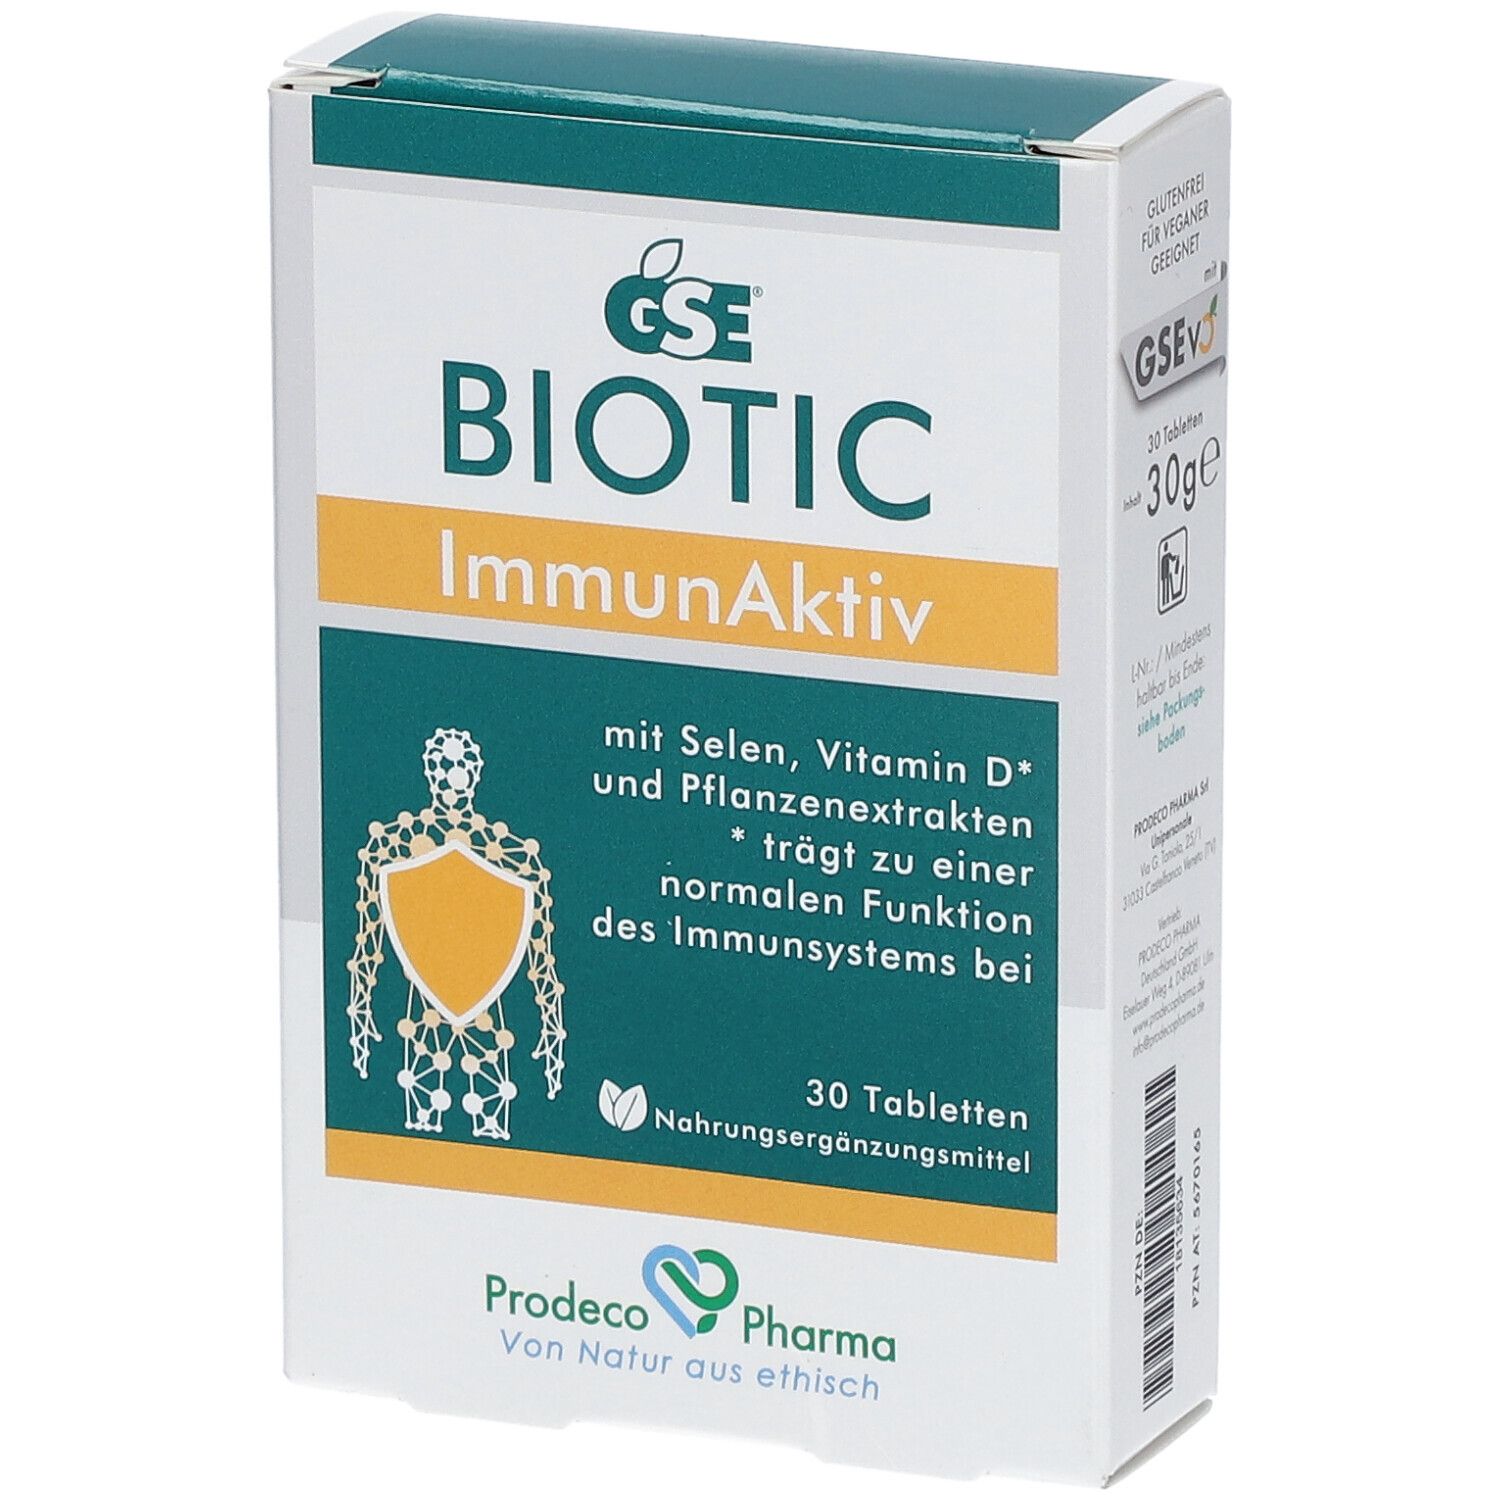 GSE Biotic ImmunAktiv